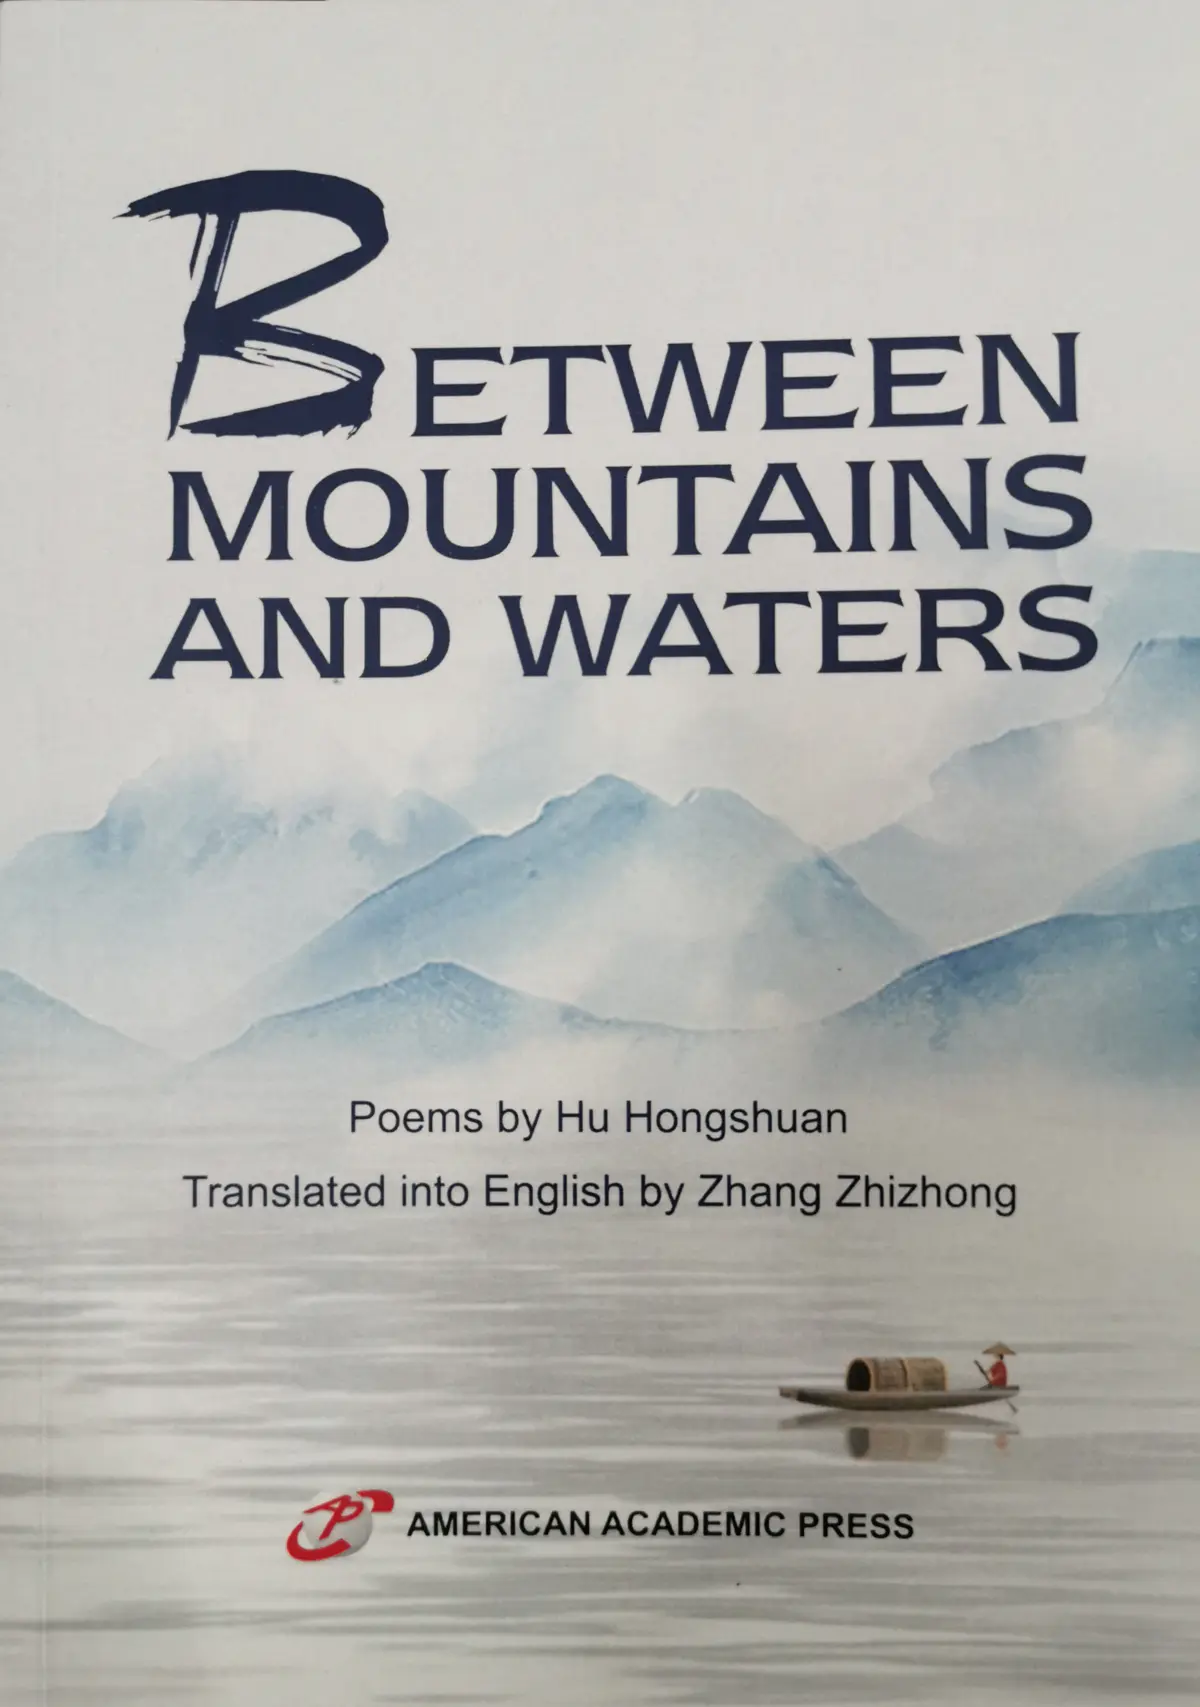 胡红拴诗集《山水间》日前由美国学术出版社出版发行